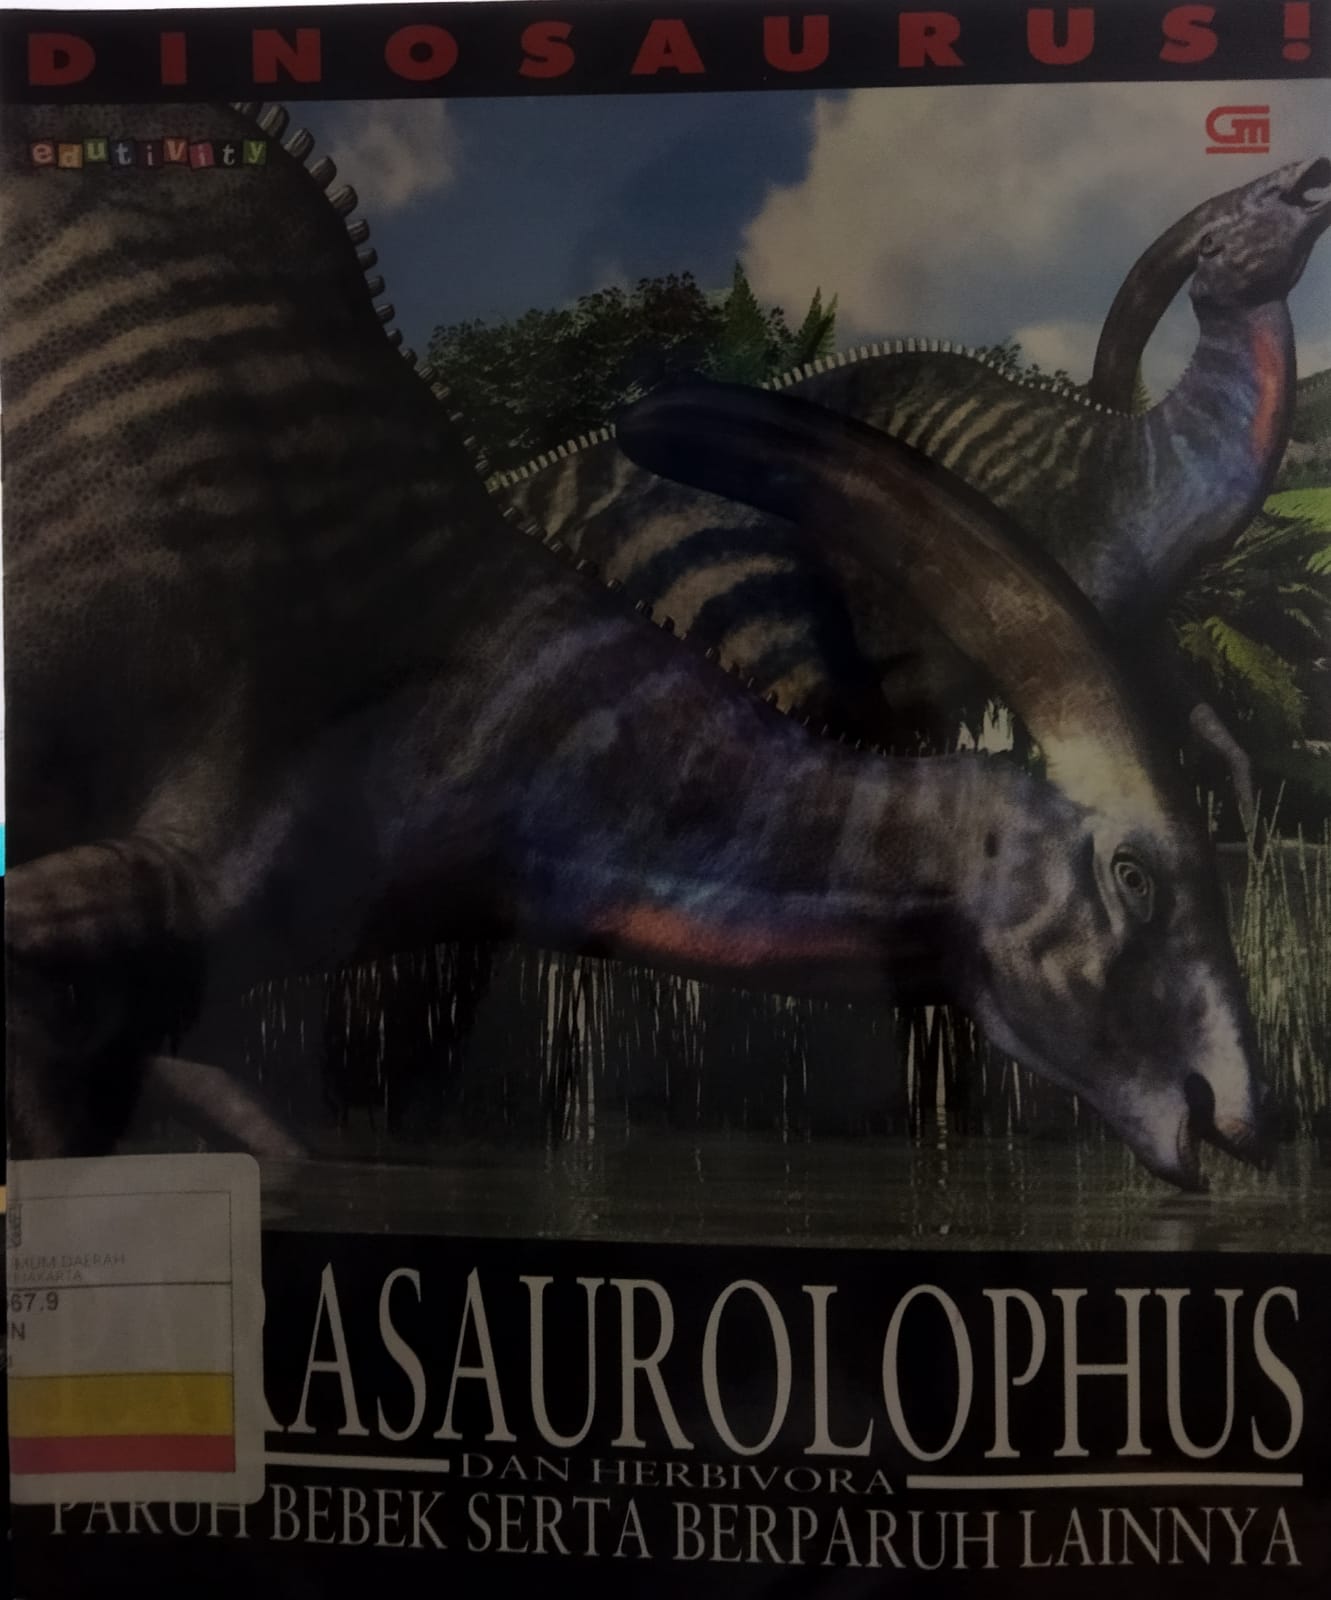 Dinosaurs! :  Parasaurolophus dan hebivora paruh bebek serta berparuh lainnya